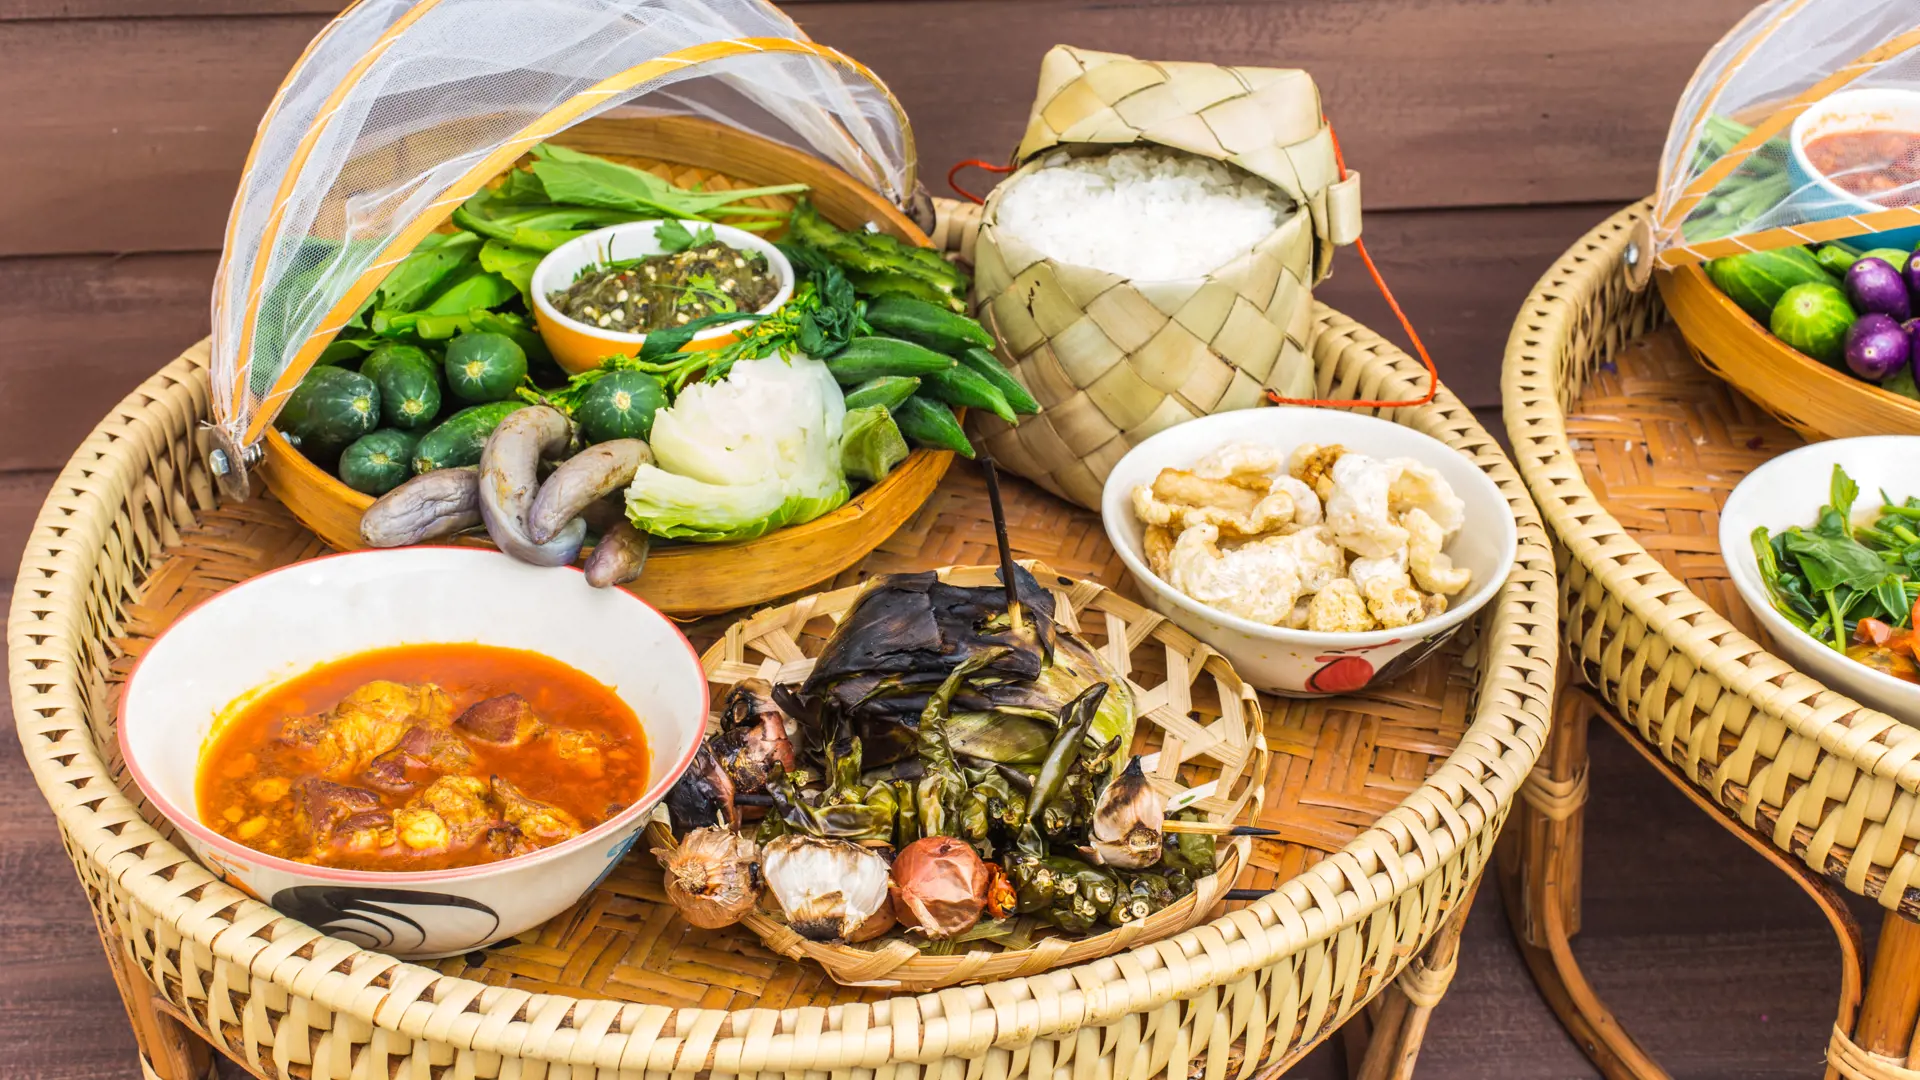 MADEN I THAILAND - Er frisklavet og delikat - og meget ofte smukt anrettet. Maden i Thailand bliver en af rejsens store oplevelser, Check Point Travel